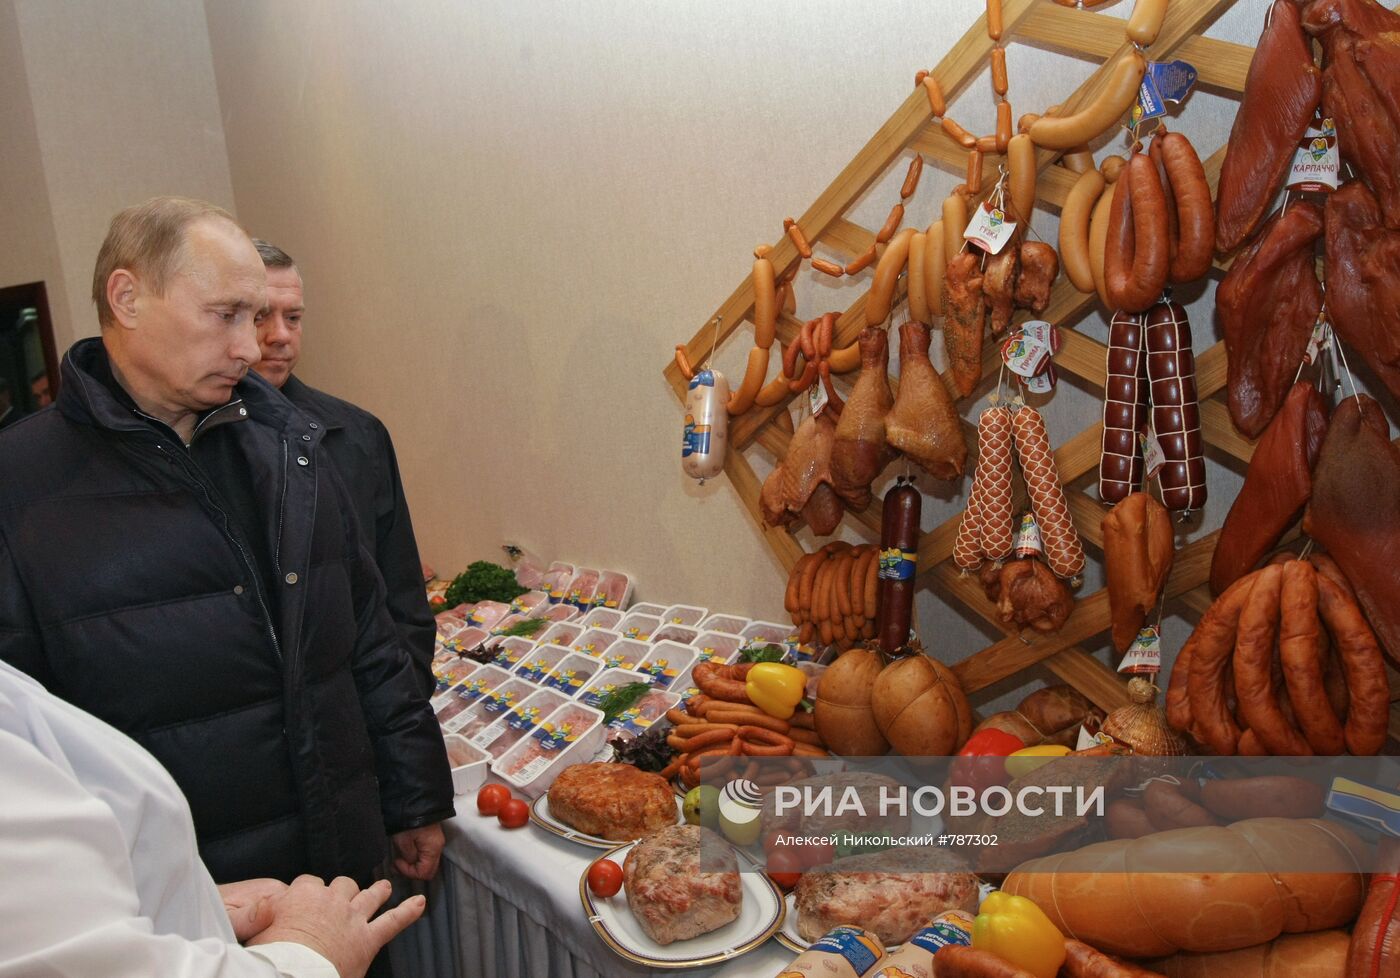 Рабочая поездка В.Путина в Южный Федеральный округ